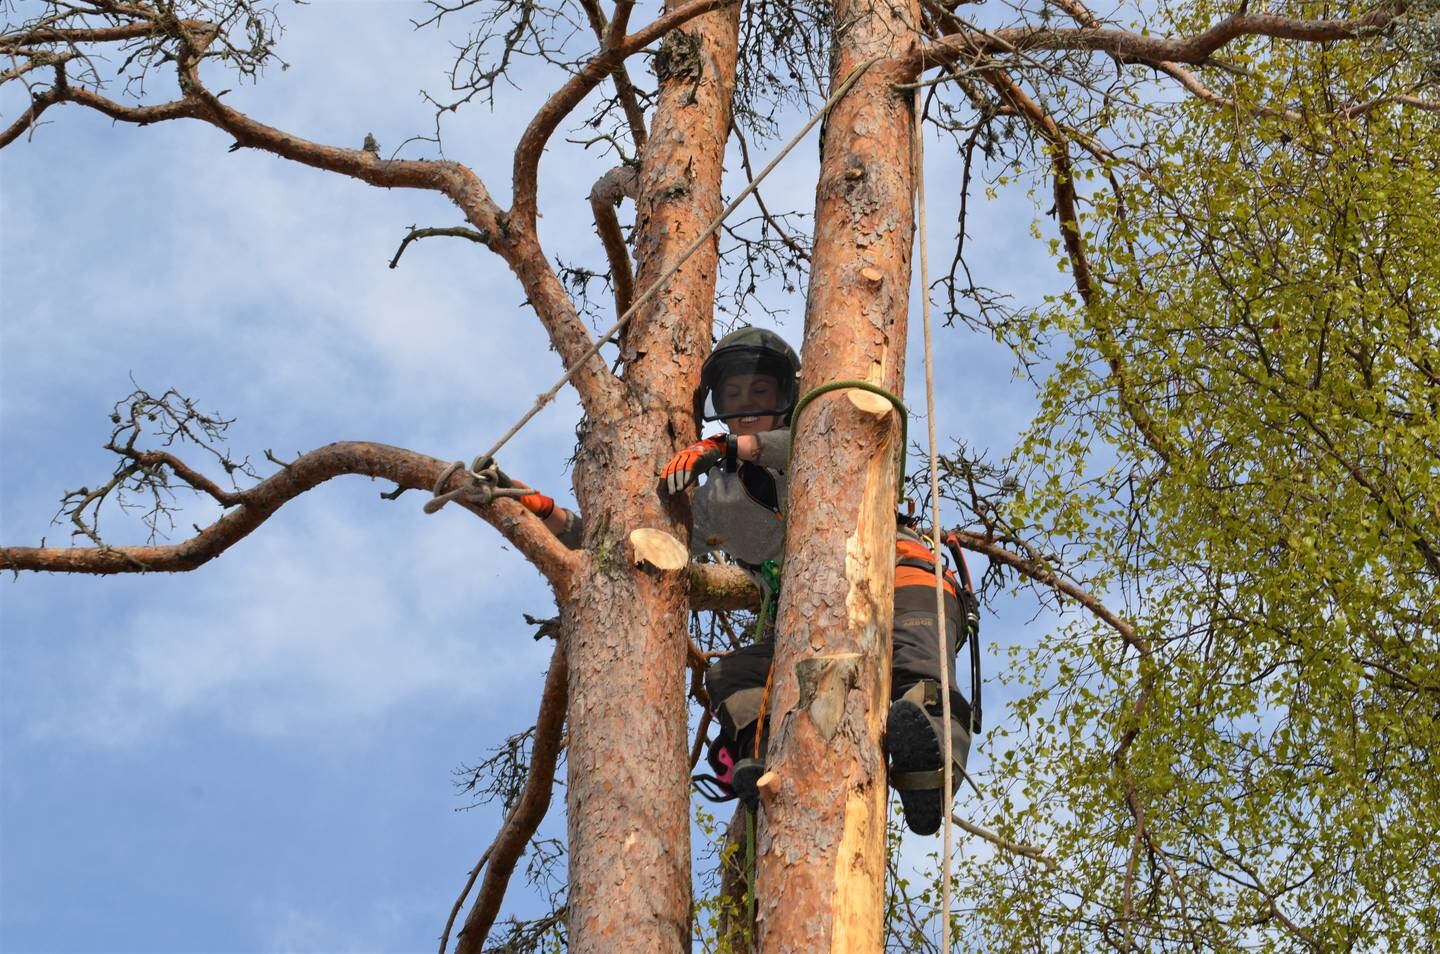 Avhengig av om treet skal felles eller beskjæres bruker Margrethe forskjellig klatreutstyr. Når det gjelder høydeskrekk tror hun alle kan kjenne på den følelsen.